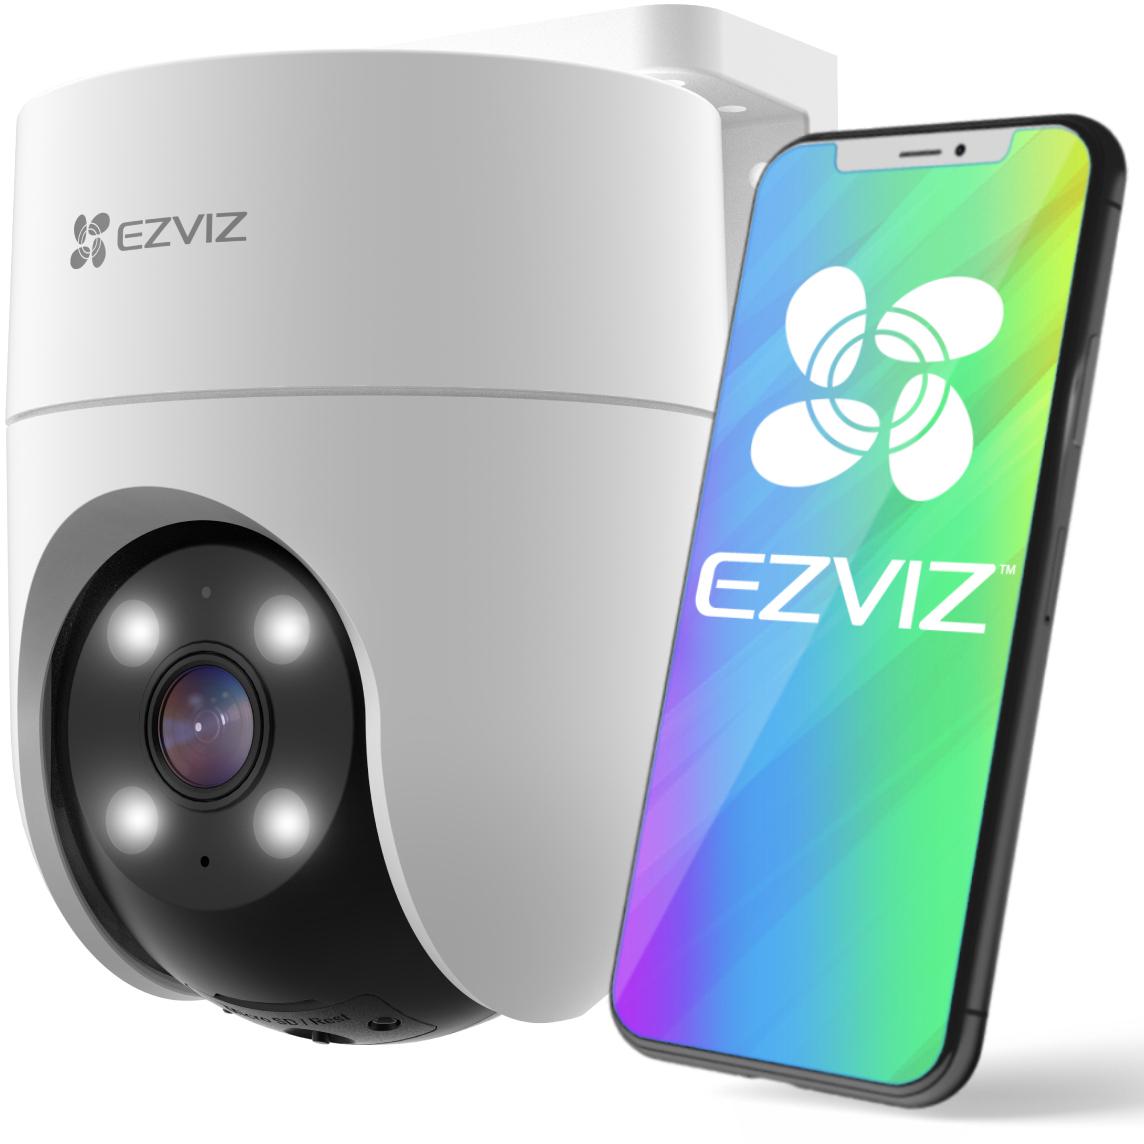 Kamera IP EZVIZ H8c 4MPx - najważniejsze funkcje: